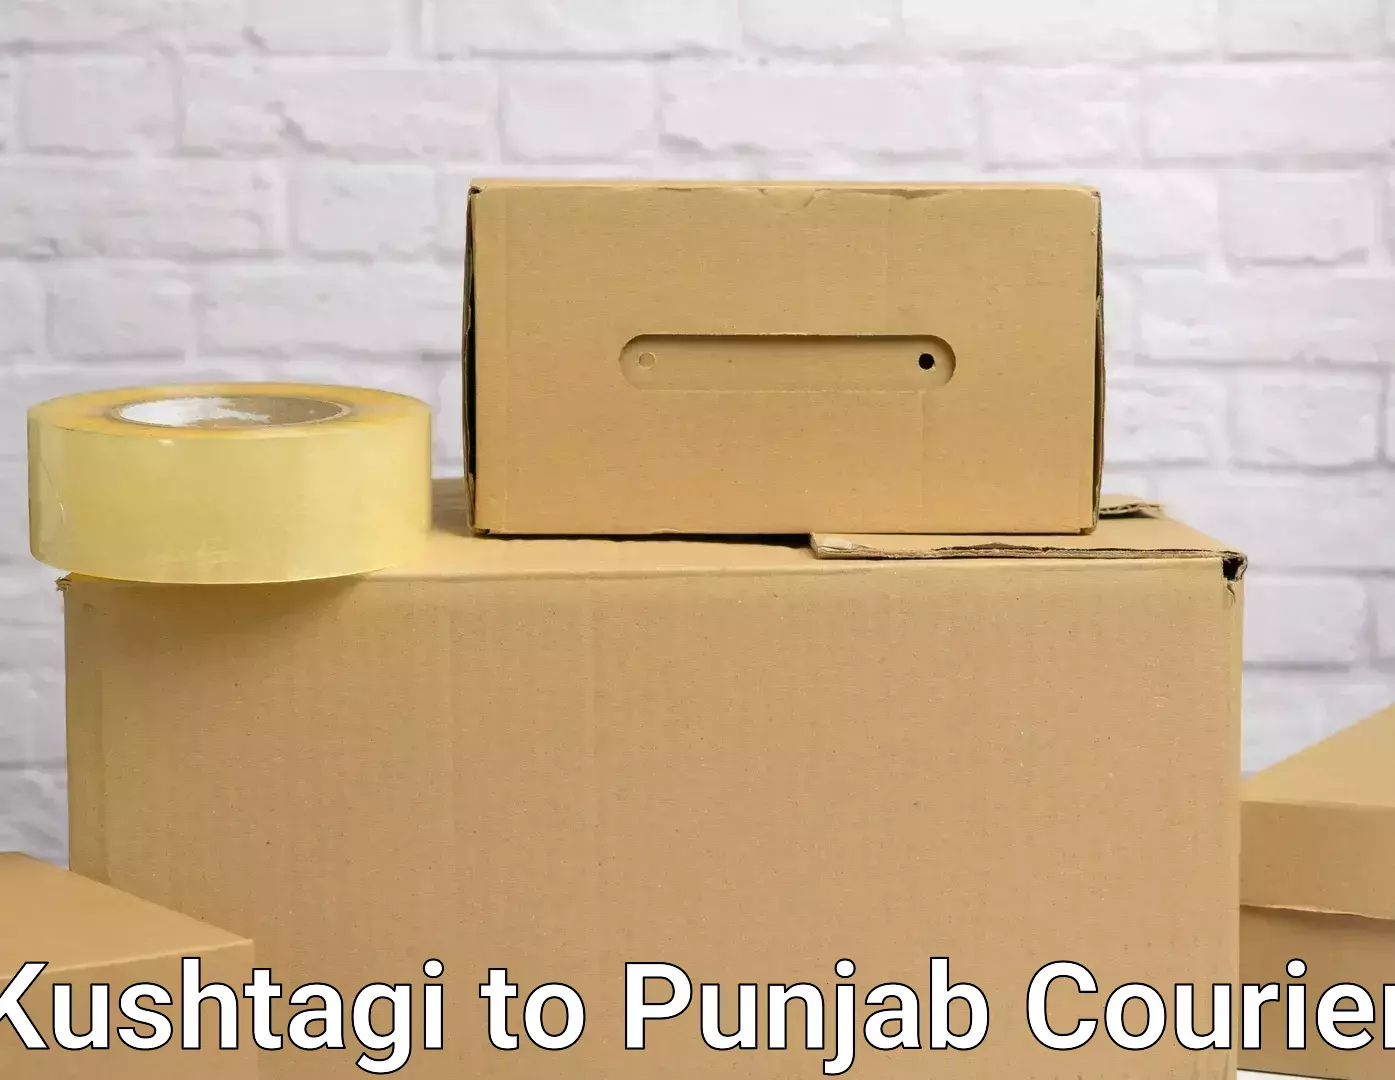 Specialized moving company Kushtagi to Punjab